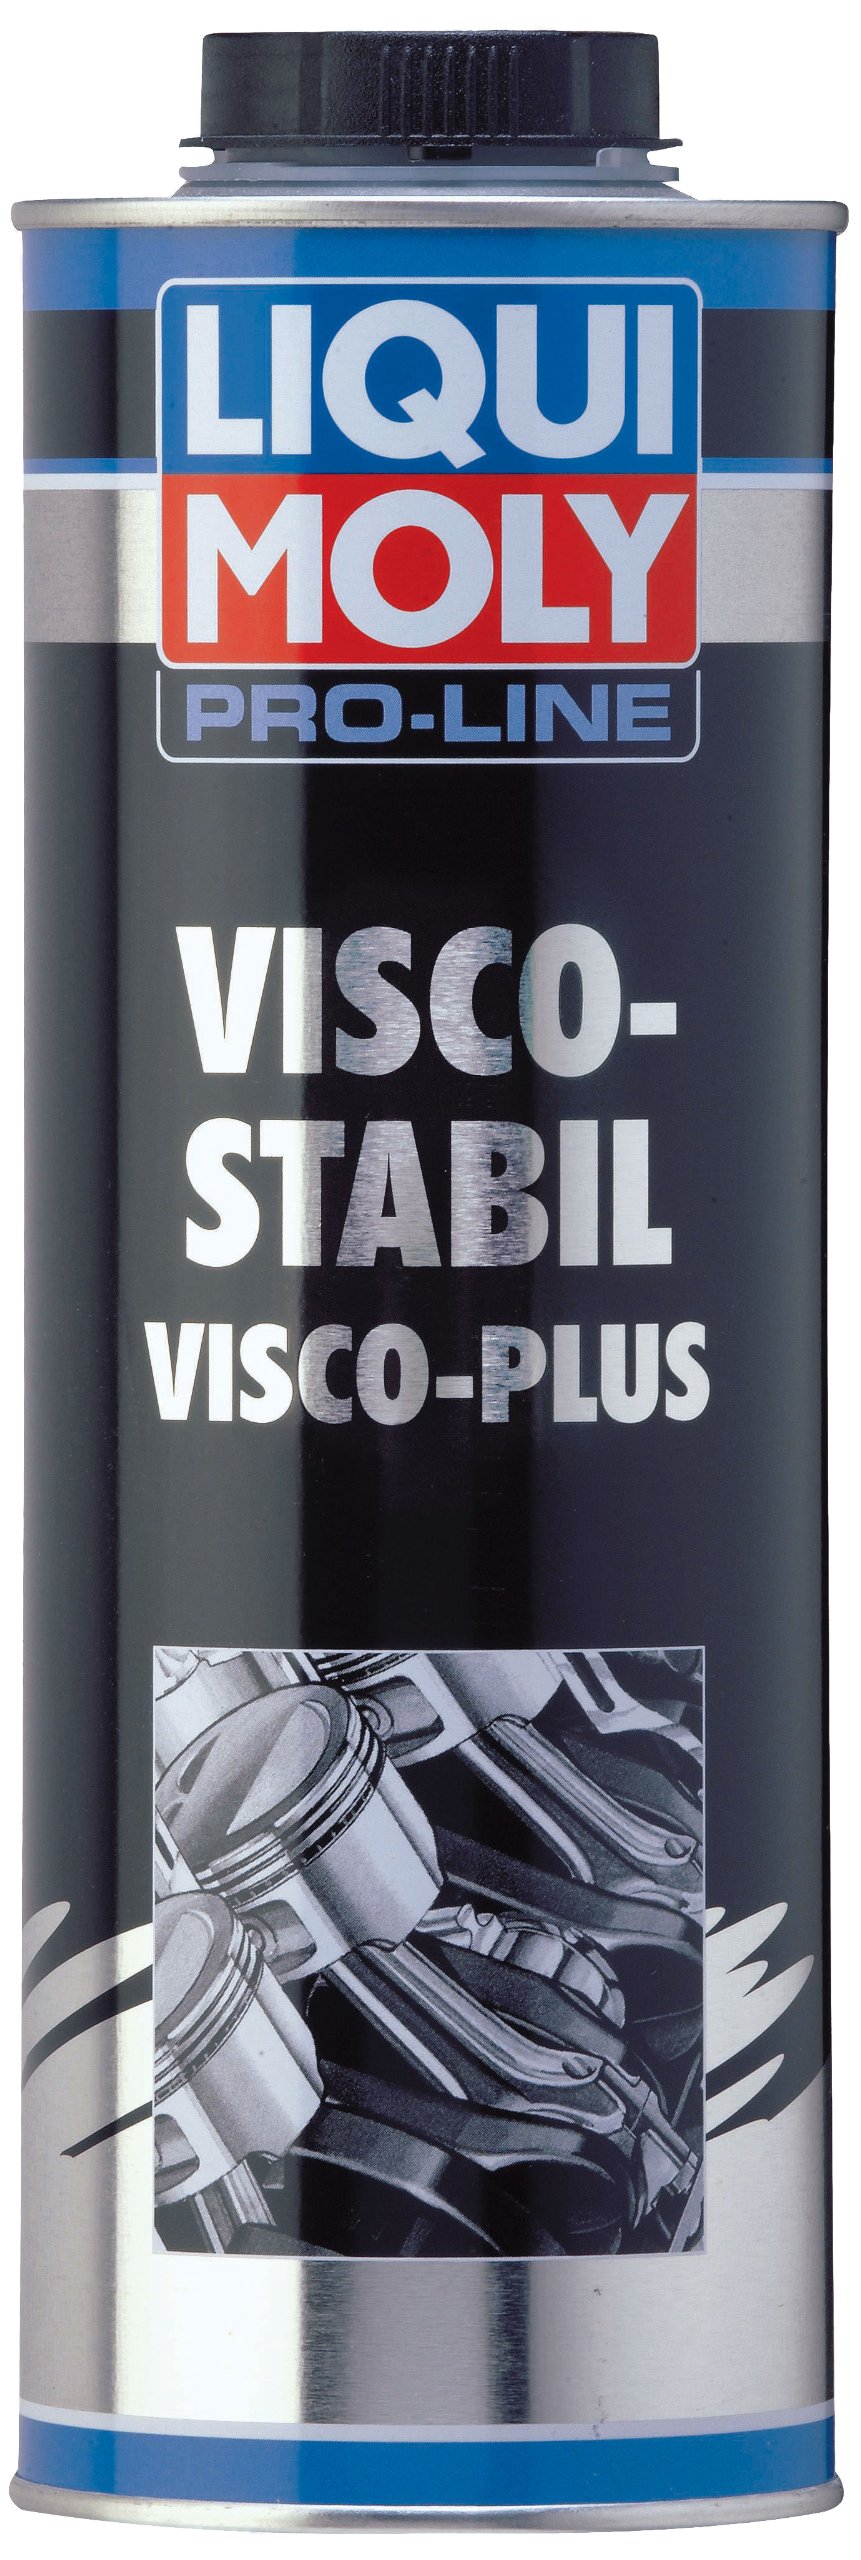 LIQUI MOLY Pro-Line Visco-Stabil | 1 L | Öladditiv | Art.-Nr.: 5196 von Liqui Moly